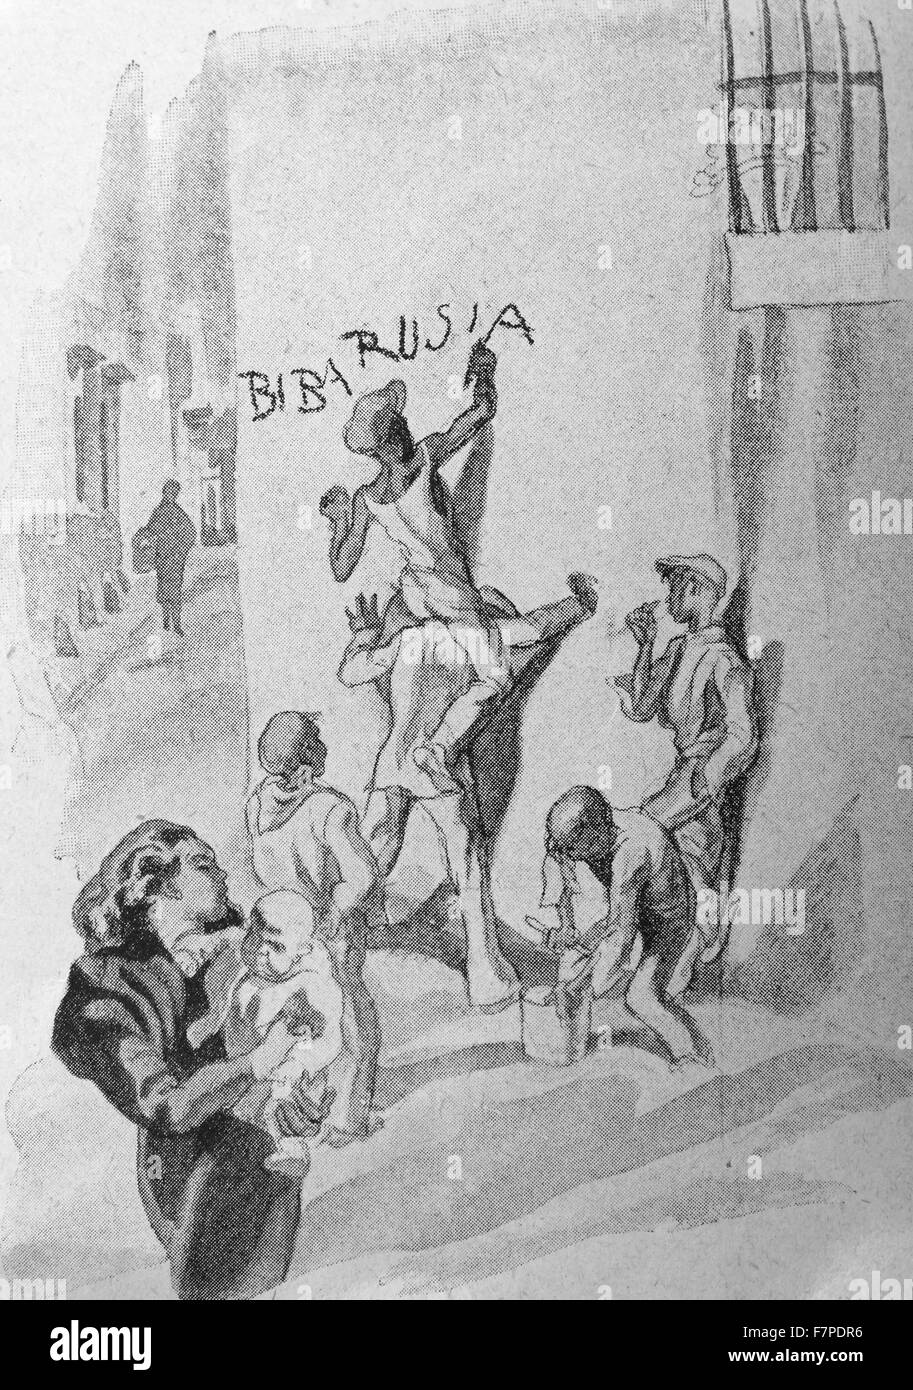 Guerra civile spagnola illustrazione dei repubblicani comunista slogan di pittura su una parete. 1936 Foto Stock